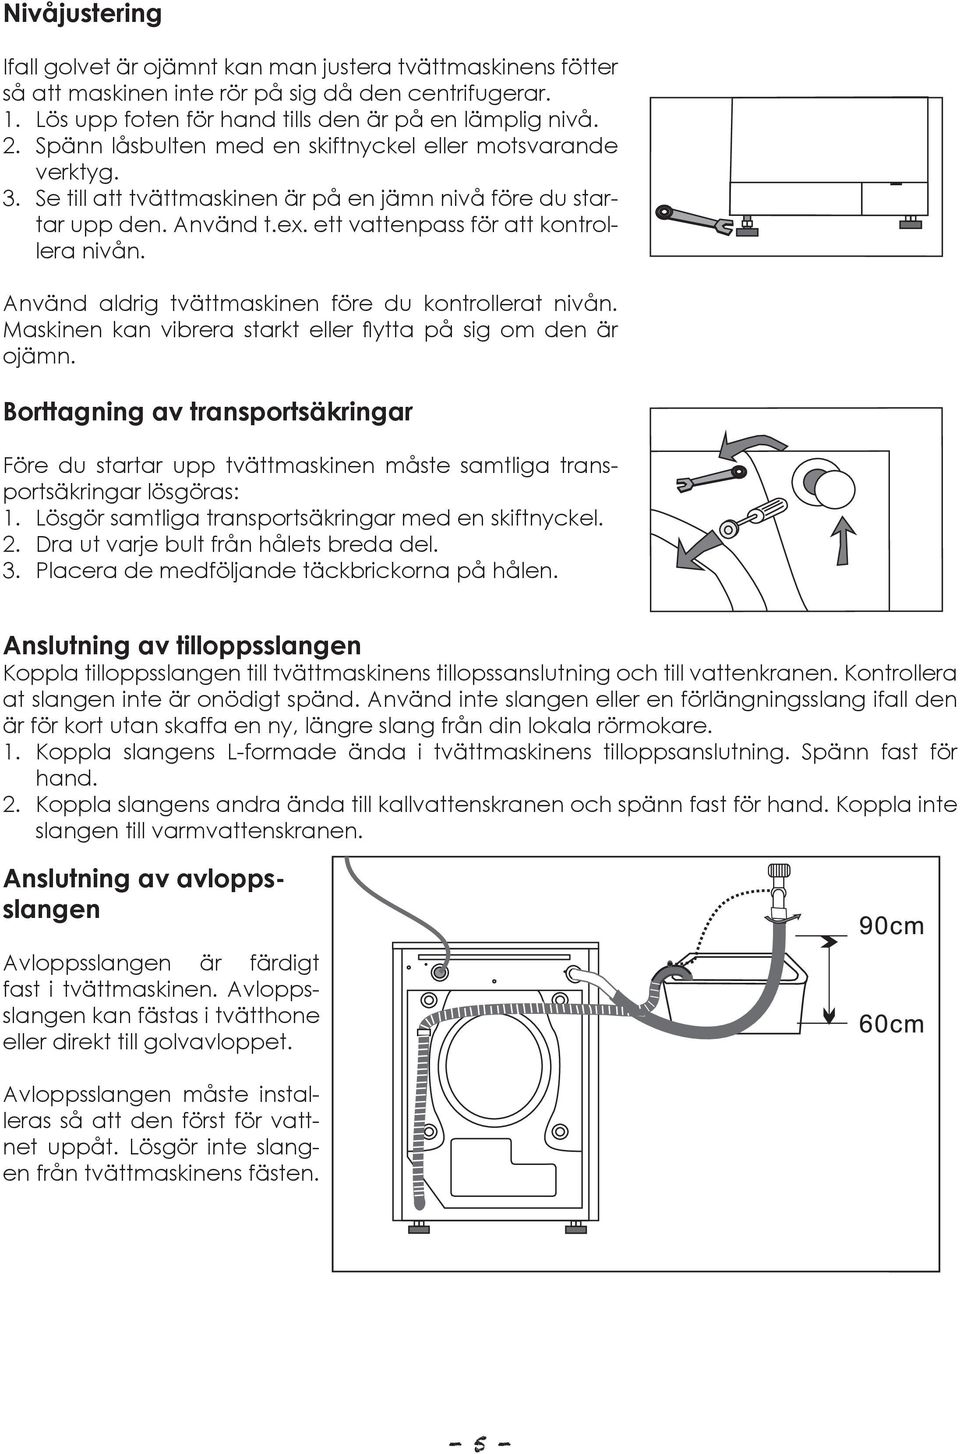 Använd aldrig tvättmaskinen före du kontrollerat nivån. Maskinen kan vibrera starkt eller flytta på sig om den är ojämn.